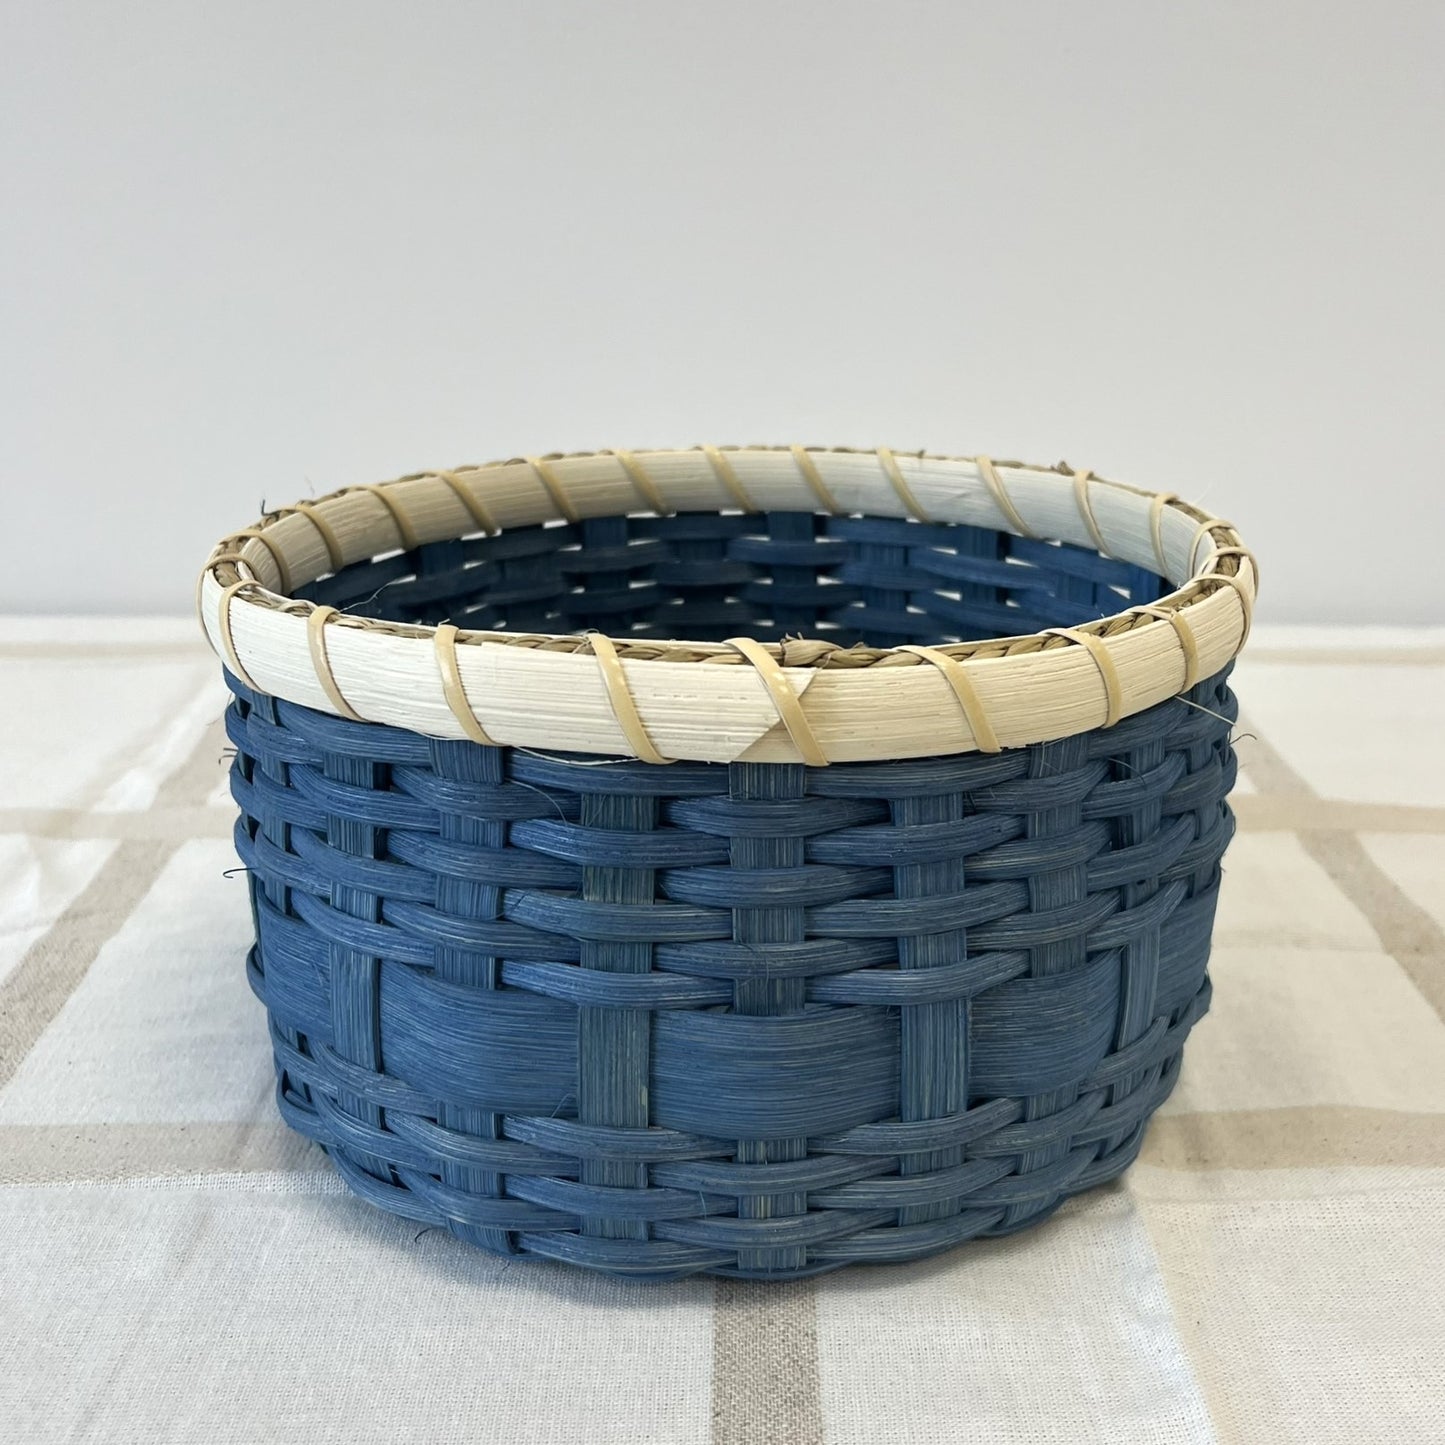 5/19 - Basket Weaving for Beginners